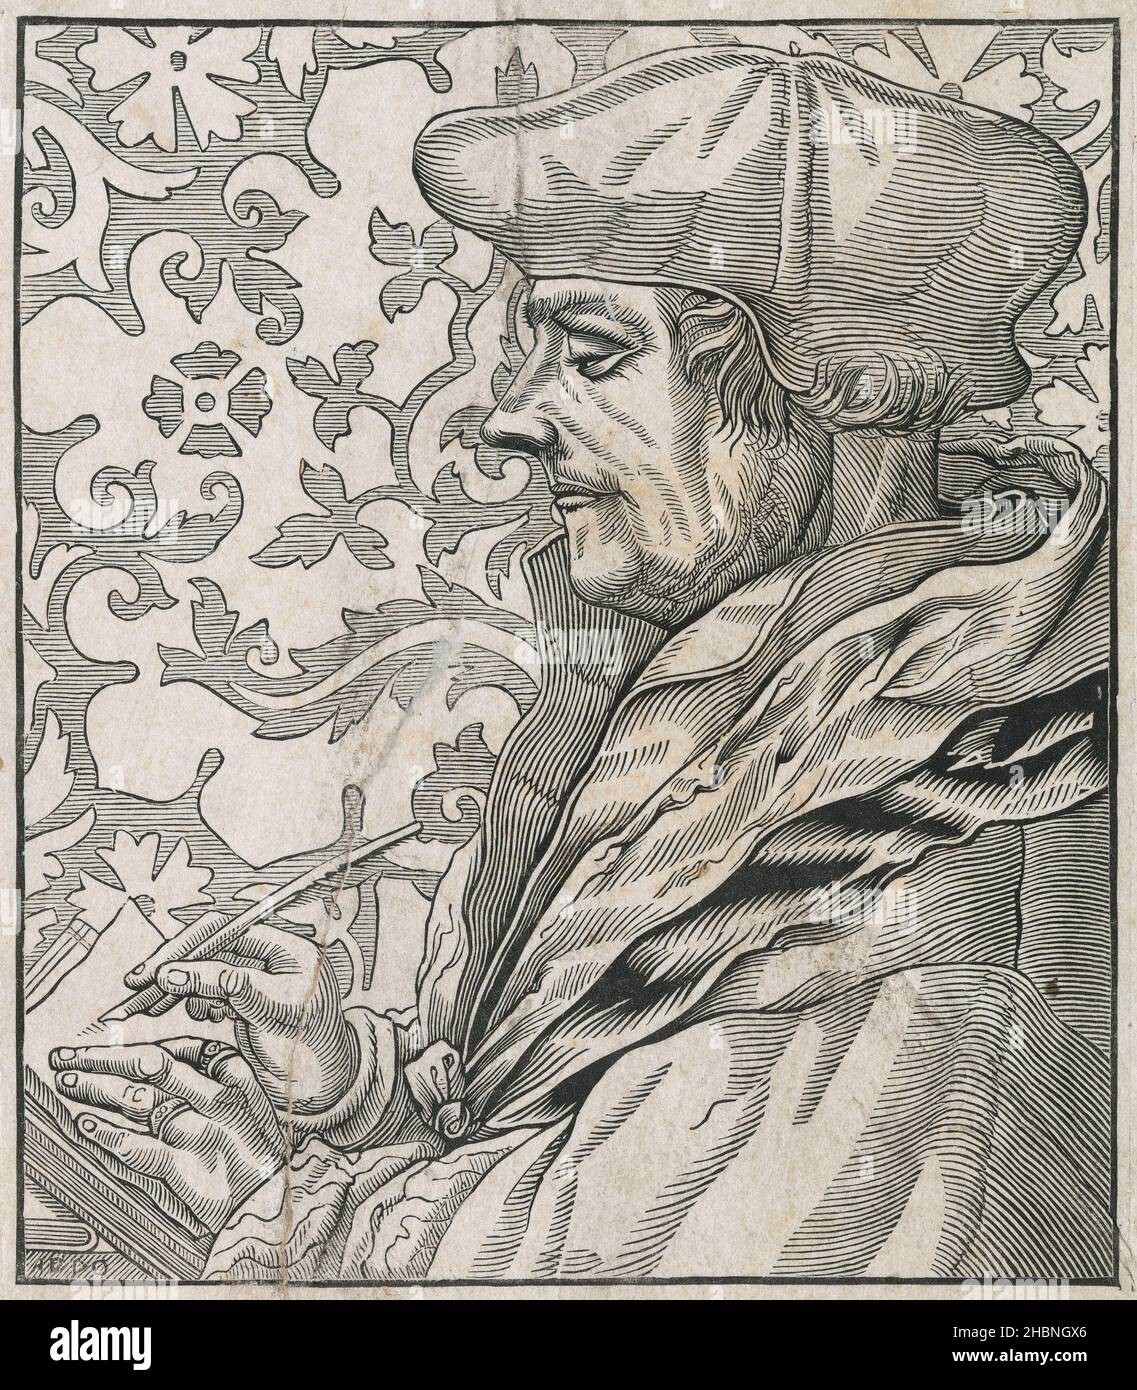 Antica incisione del 19th secolo di Erasmus, dopo Hans Holbein il giovane. Desiderius Erasmus Roterodamus (1466-1536) è stato un filosofo e teologo cattolico olandese, considerato uno dei più grandi studiosi del Rinascimento settentrionale. FONTE: INCISIONE ORIGINALE Foto Stock